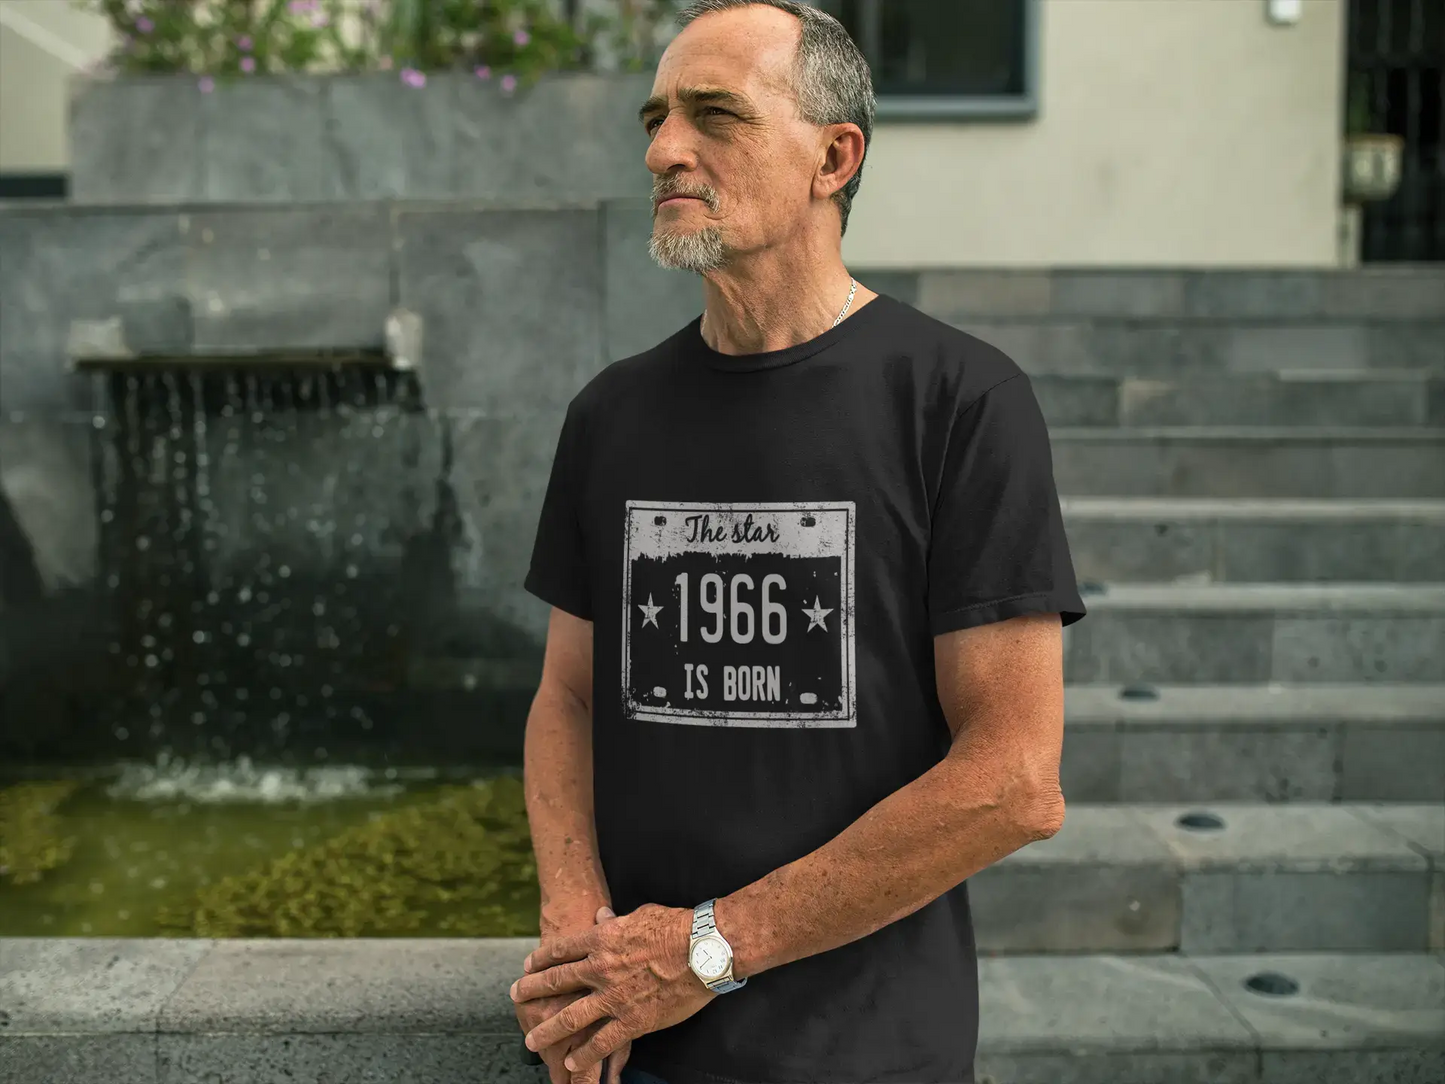 The Star 1966 is Born T-shirt Homme Noir Cadeau d'anniversaire 00452